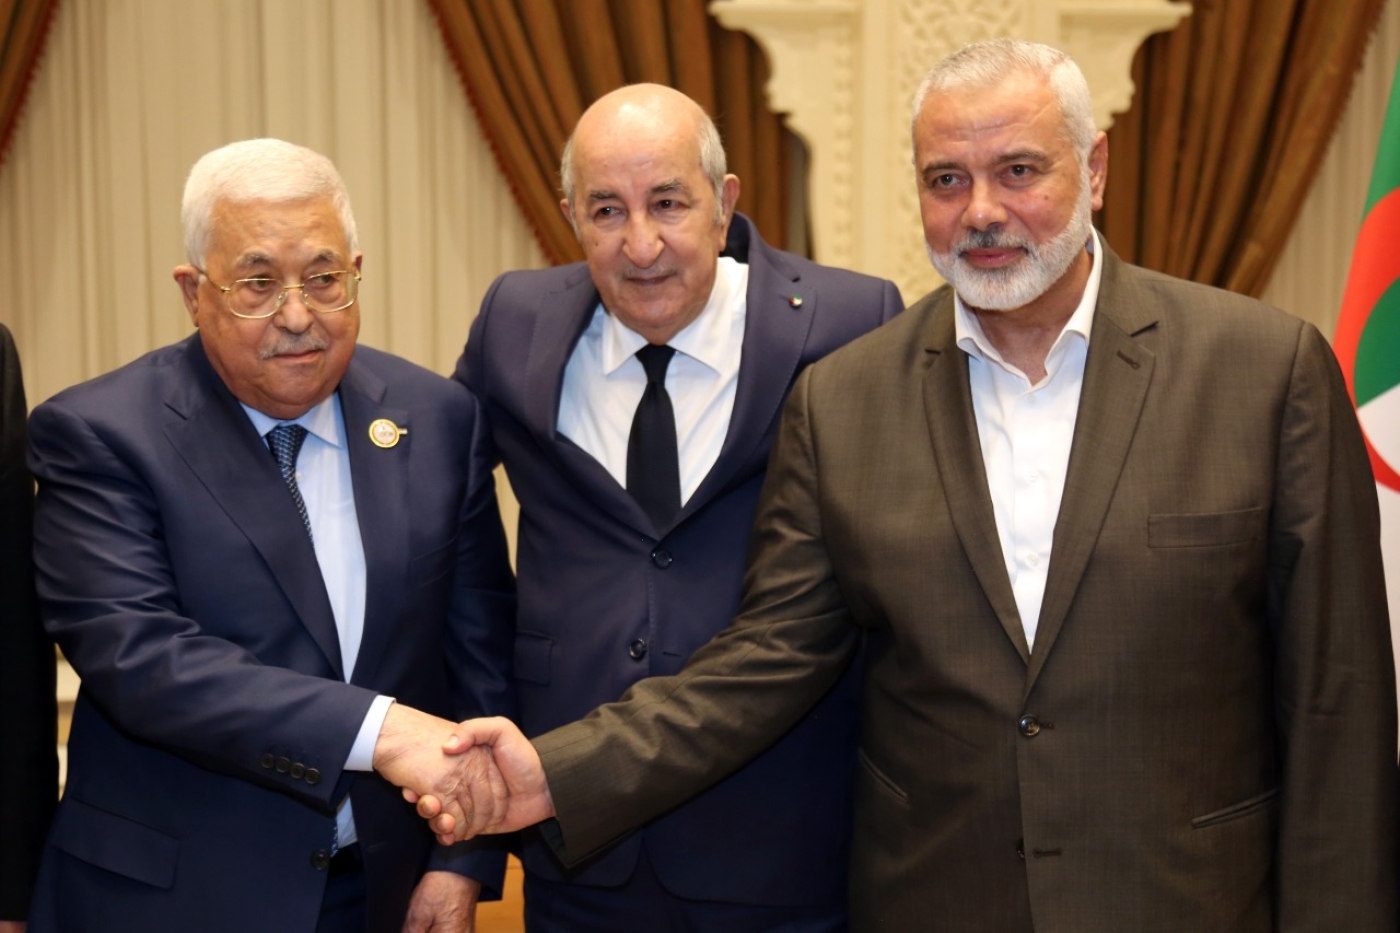 Le 5 juillet 2022, le président Tebboune a réuni, à Alger, le président de l’État de Palestine, Mahmoud Abbas, et le chef du bureau politique du Hamas, Ismaël Haniyeh. Un rencontre qualifiée d’historique (Twitter)